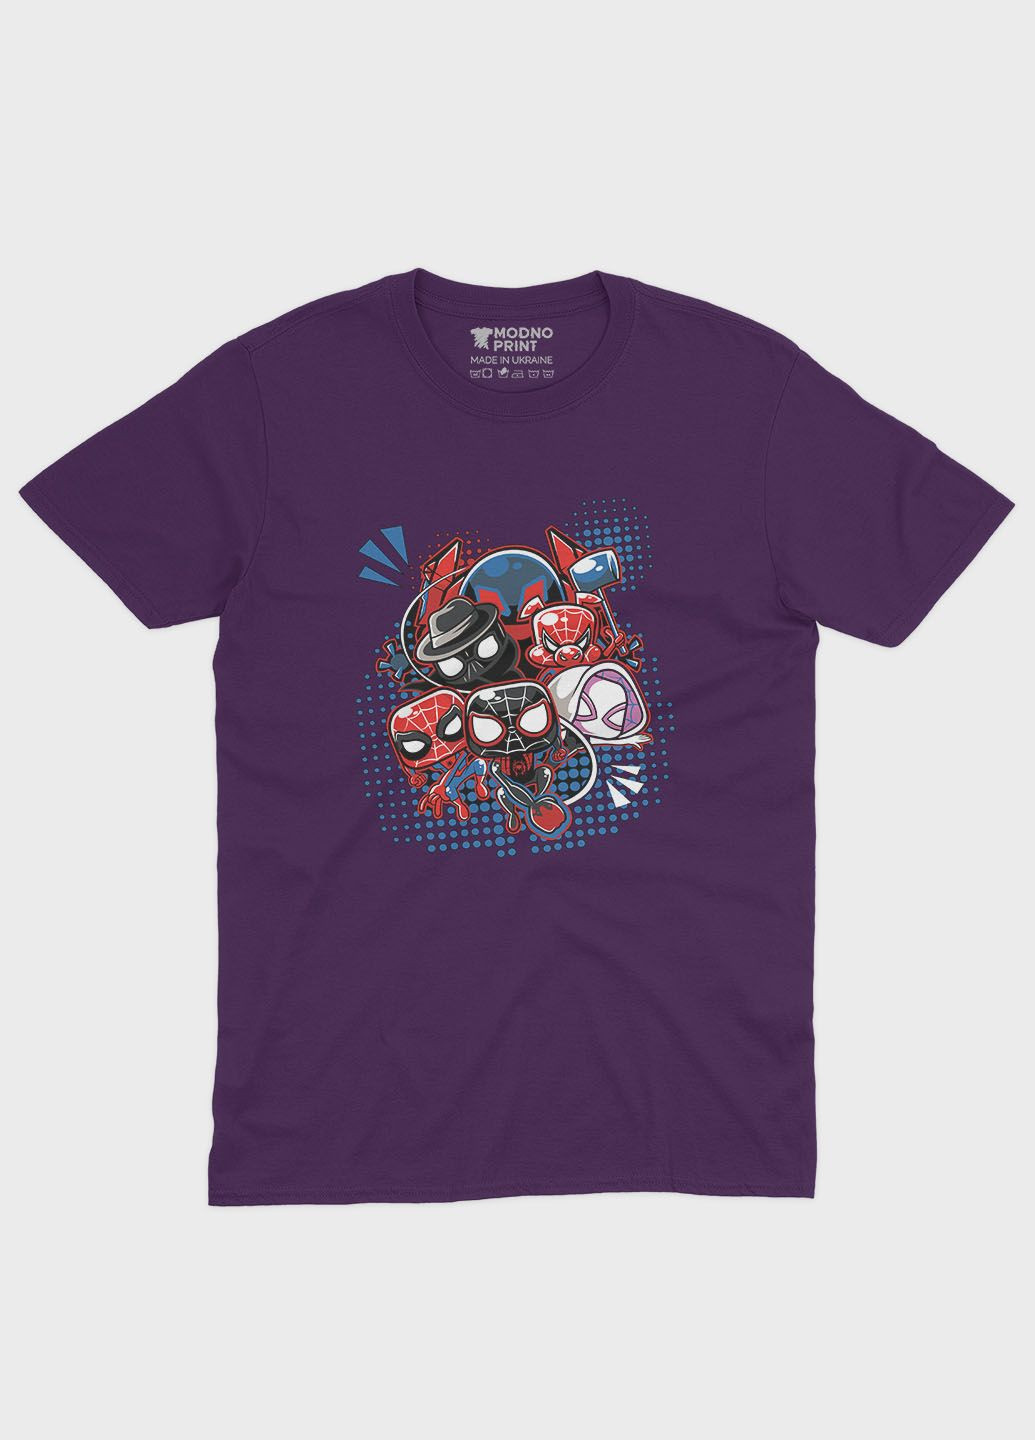 Фиолетовая демисезонная футболка для мальчика с принтом супергероя - человек-паук (ts001-1-dby-006-014-023-b) Modno